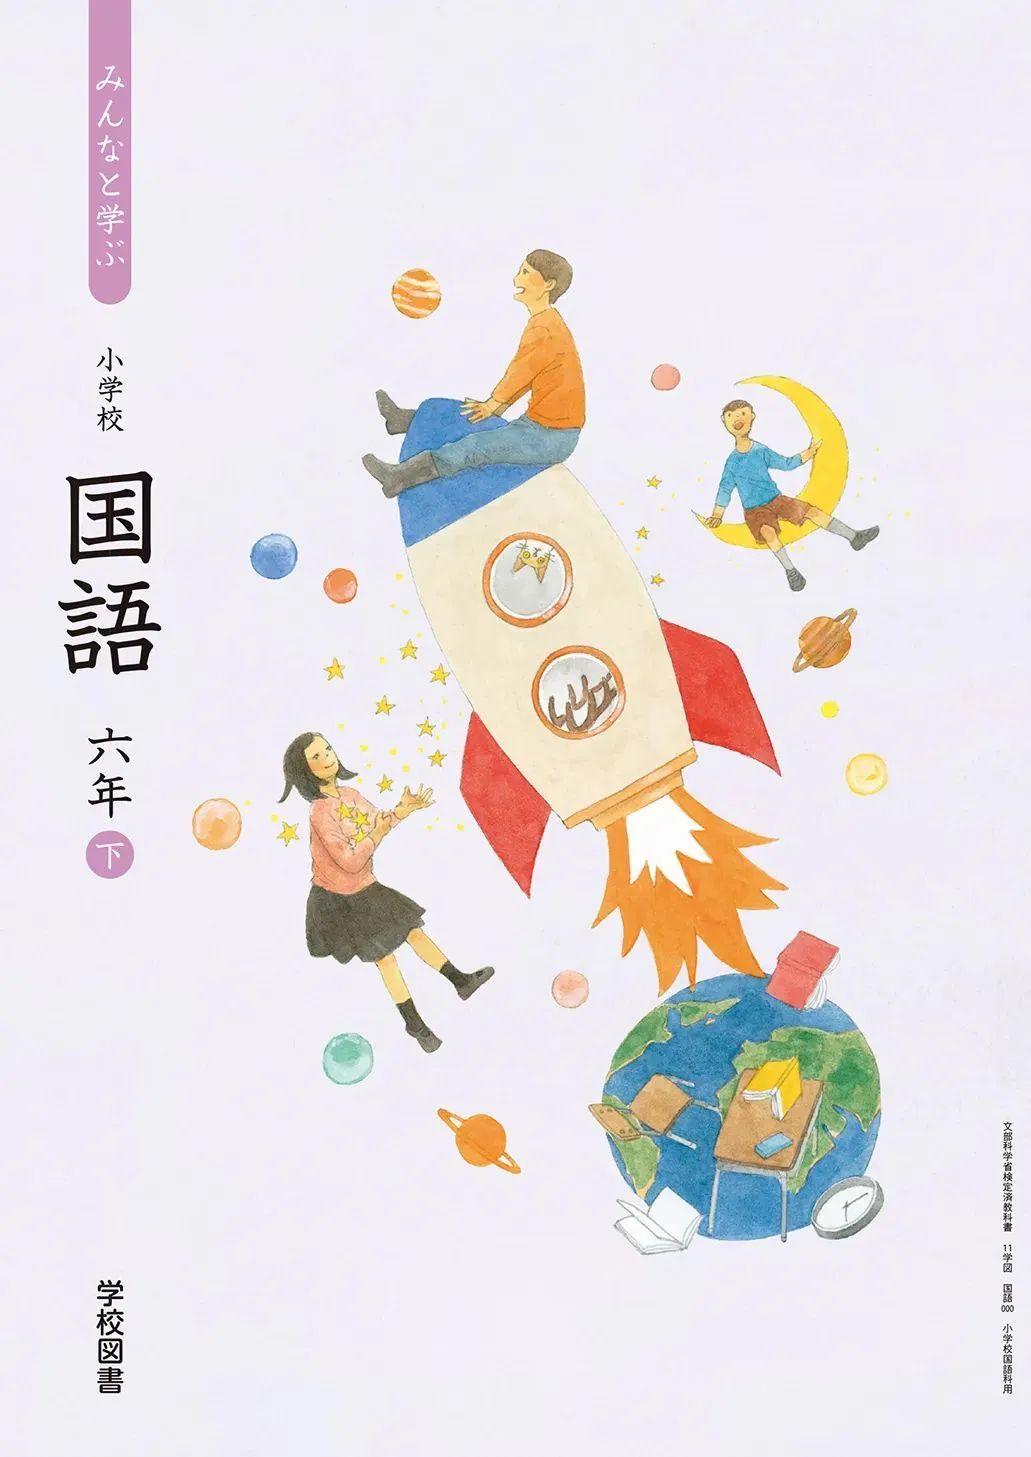 日本中小学生教科书封面设计,太美了吧! 第18张